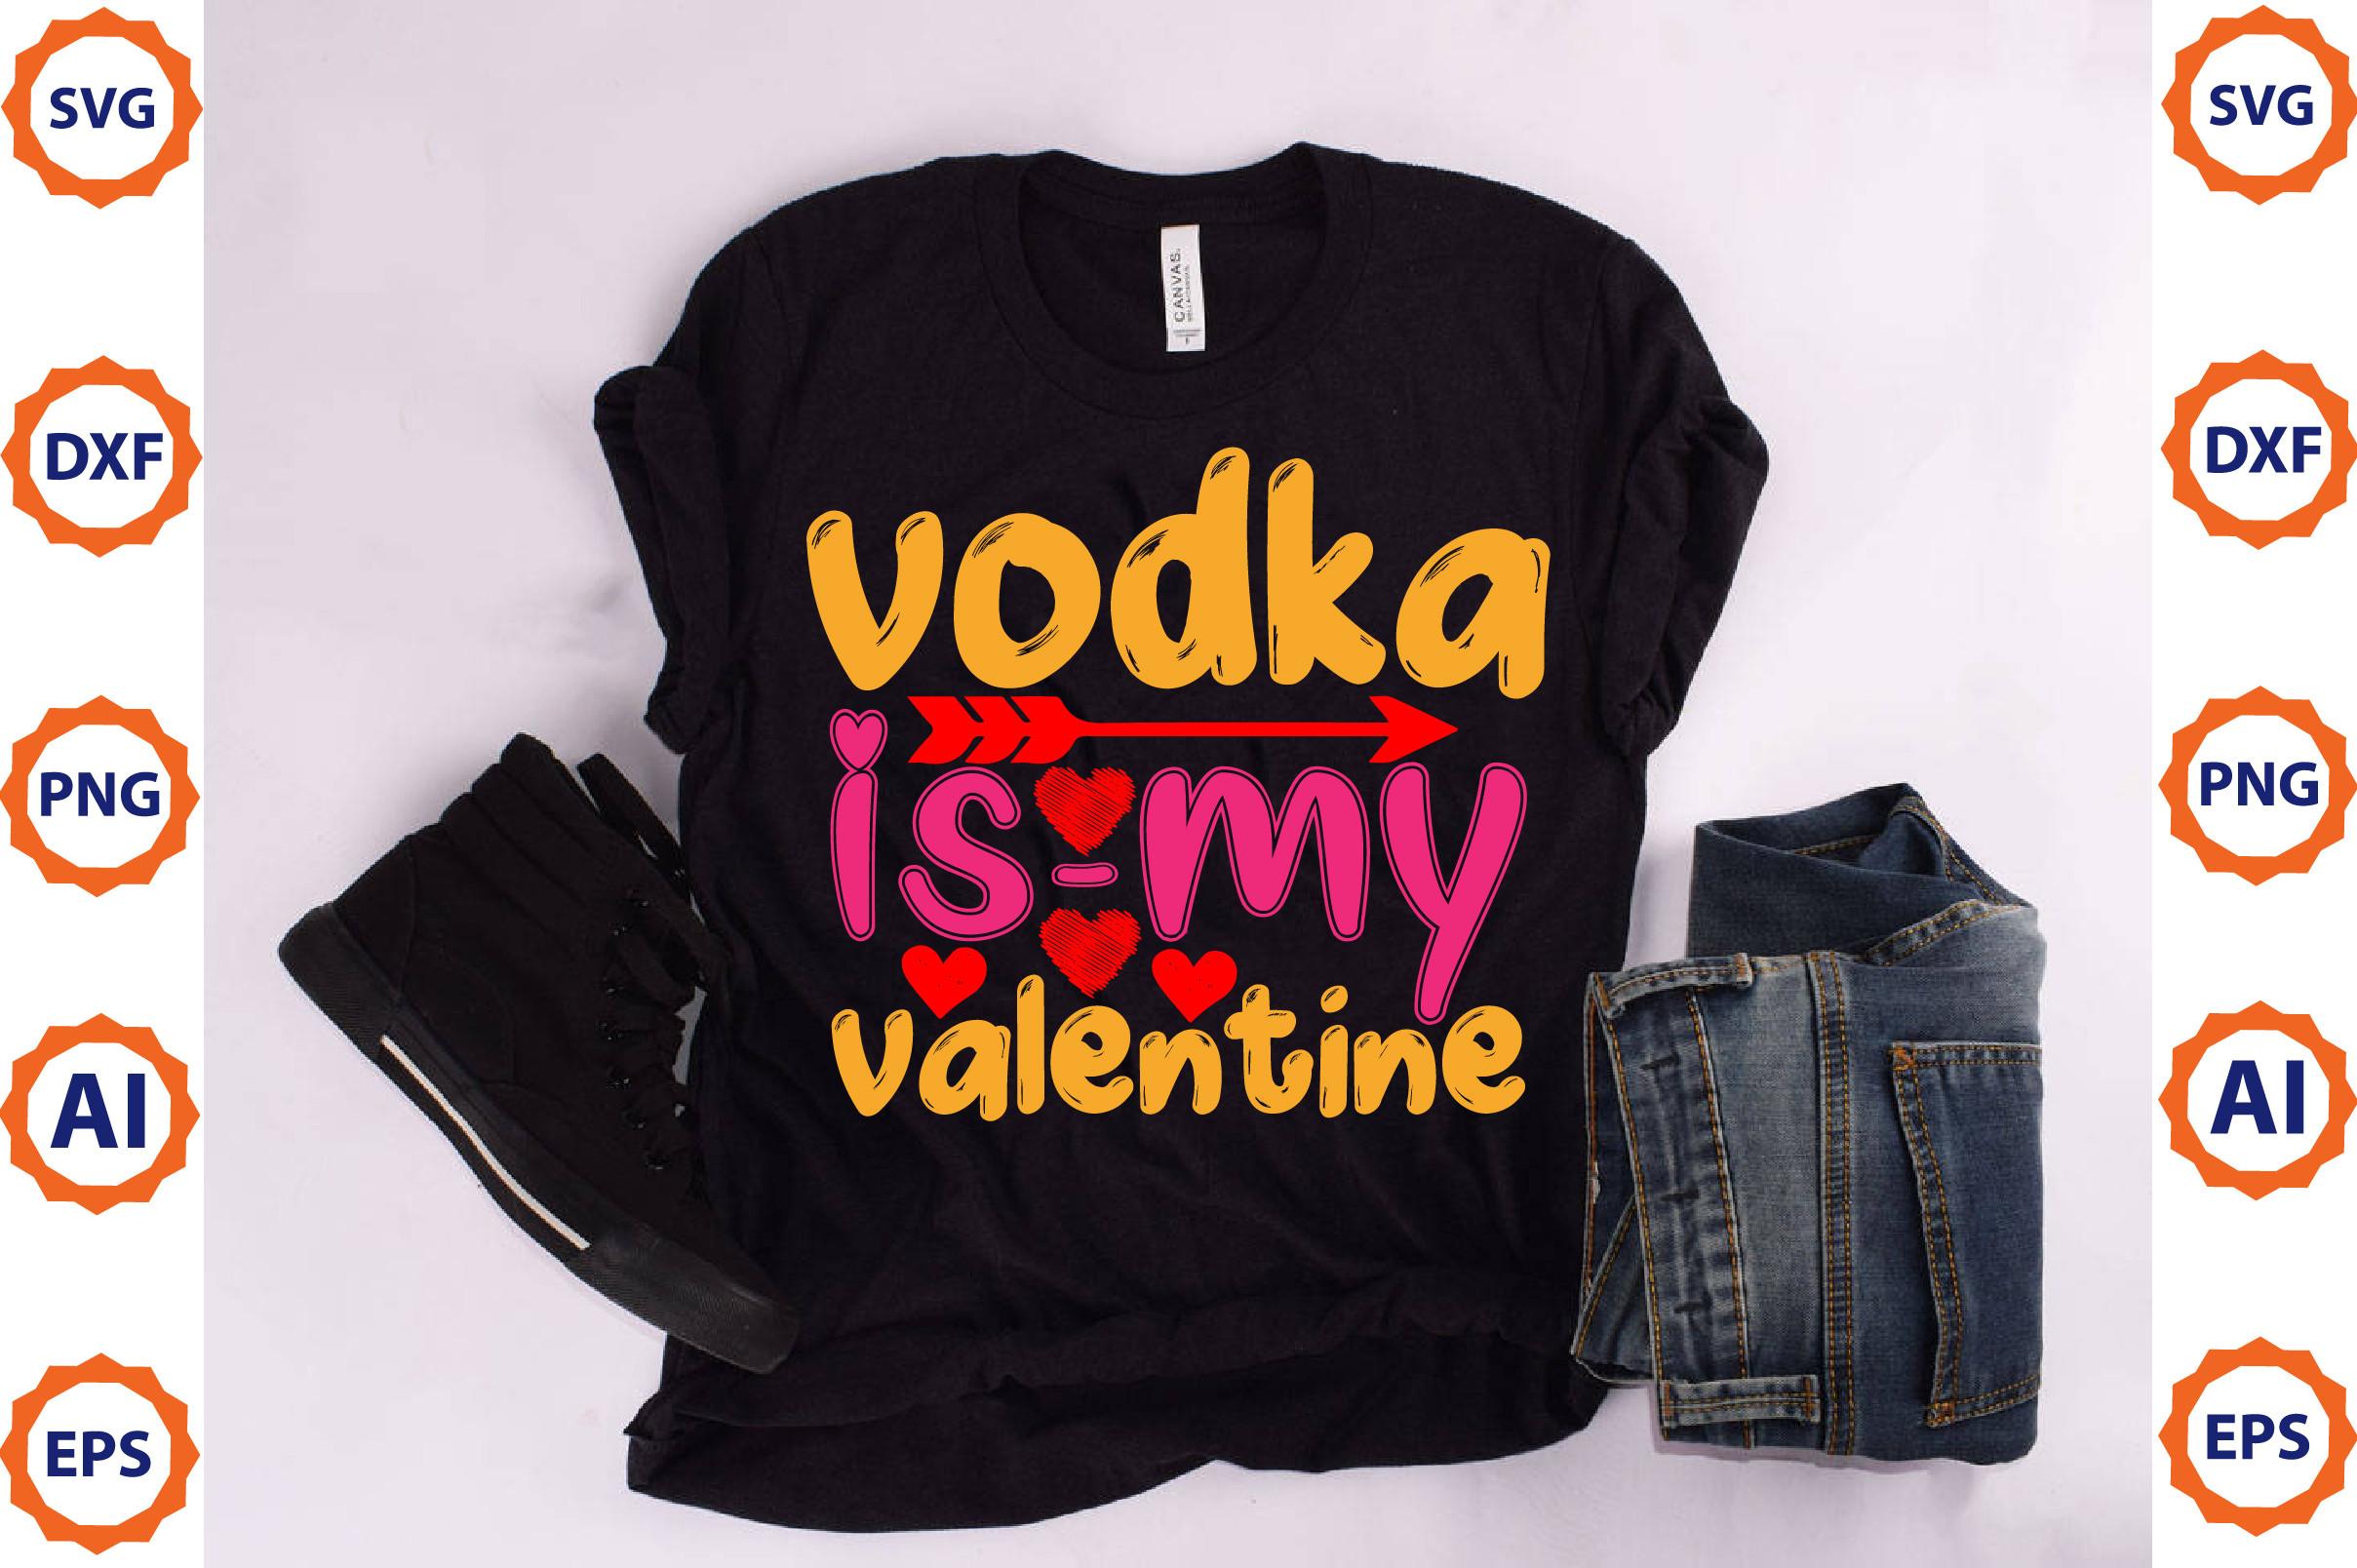 Vodka is-my Valentine2